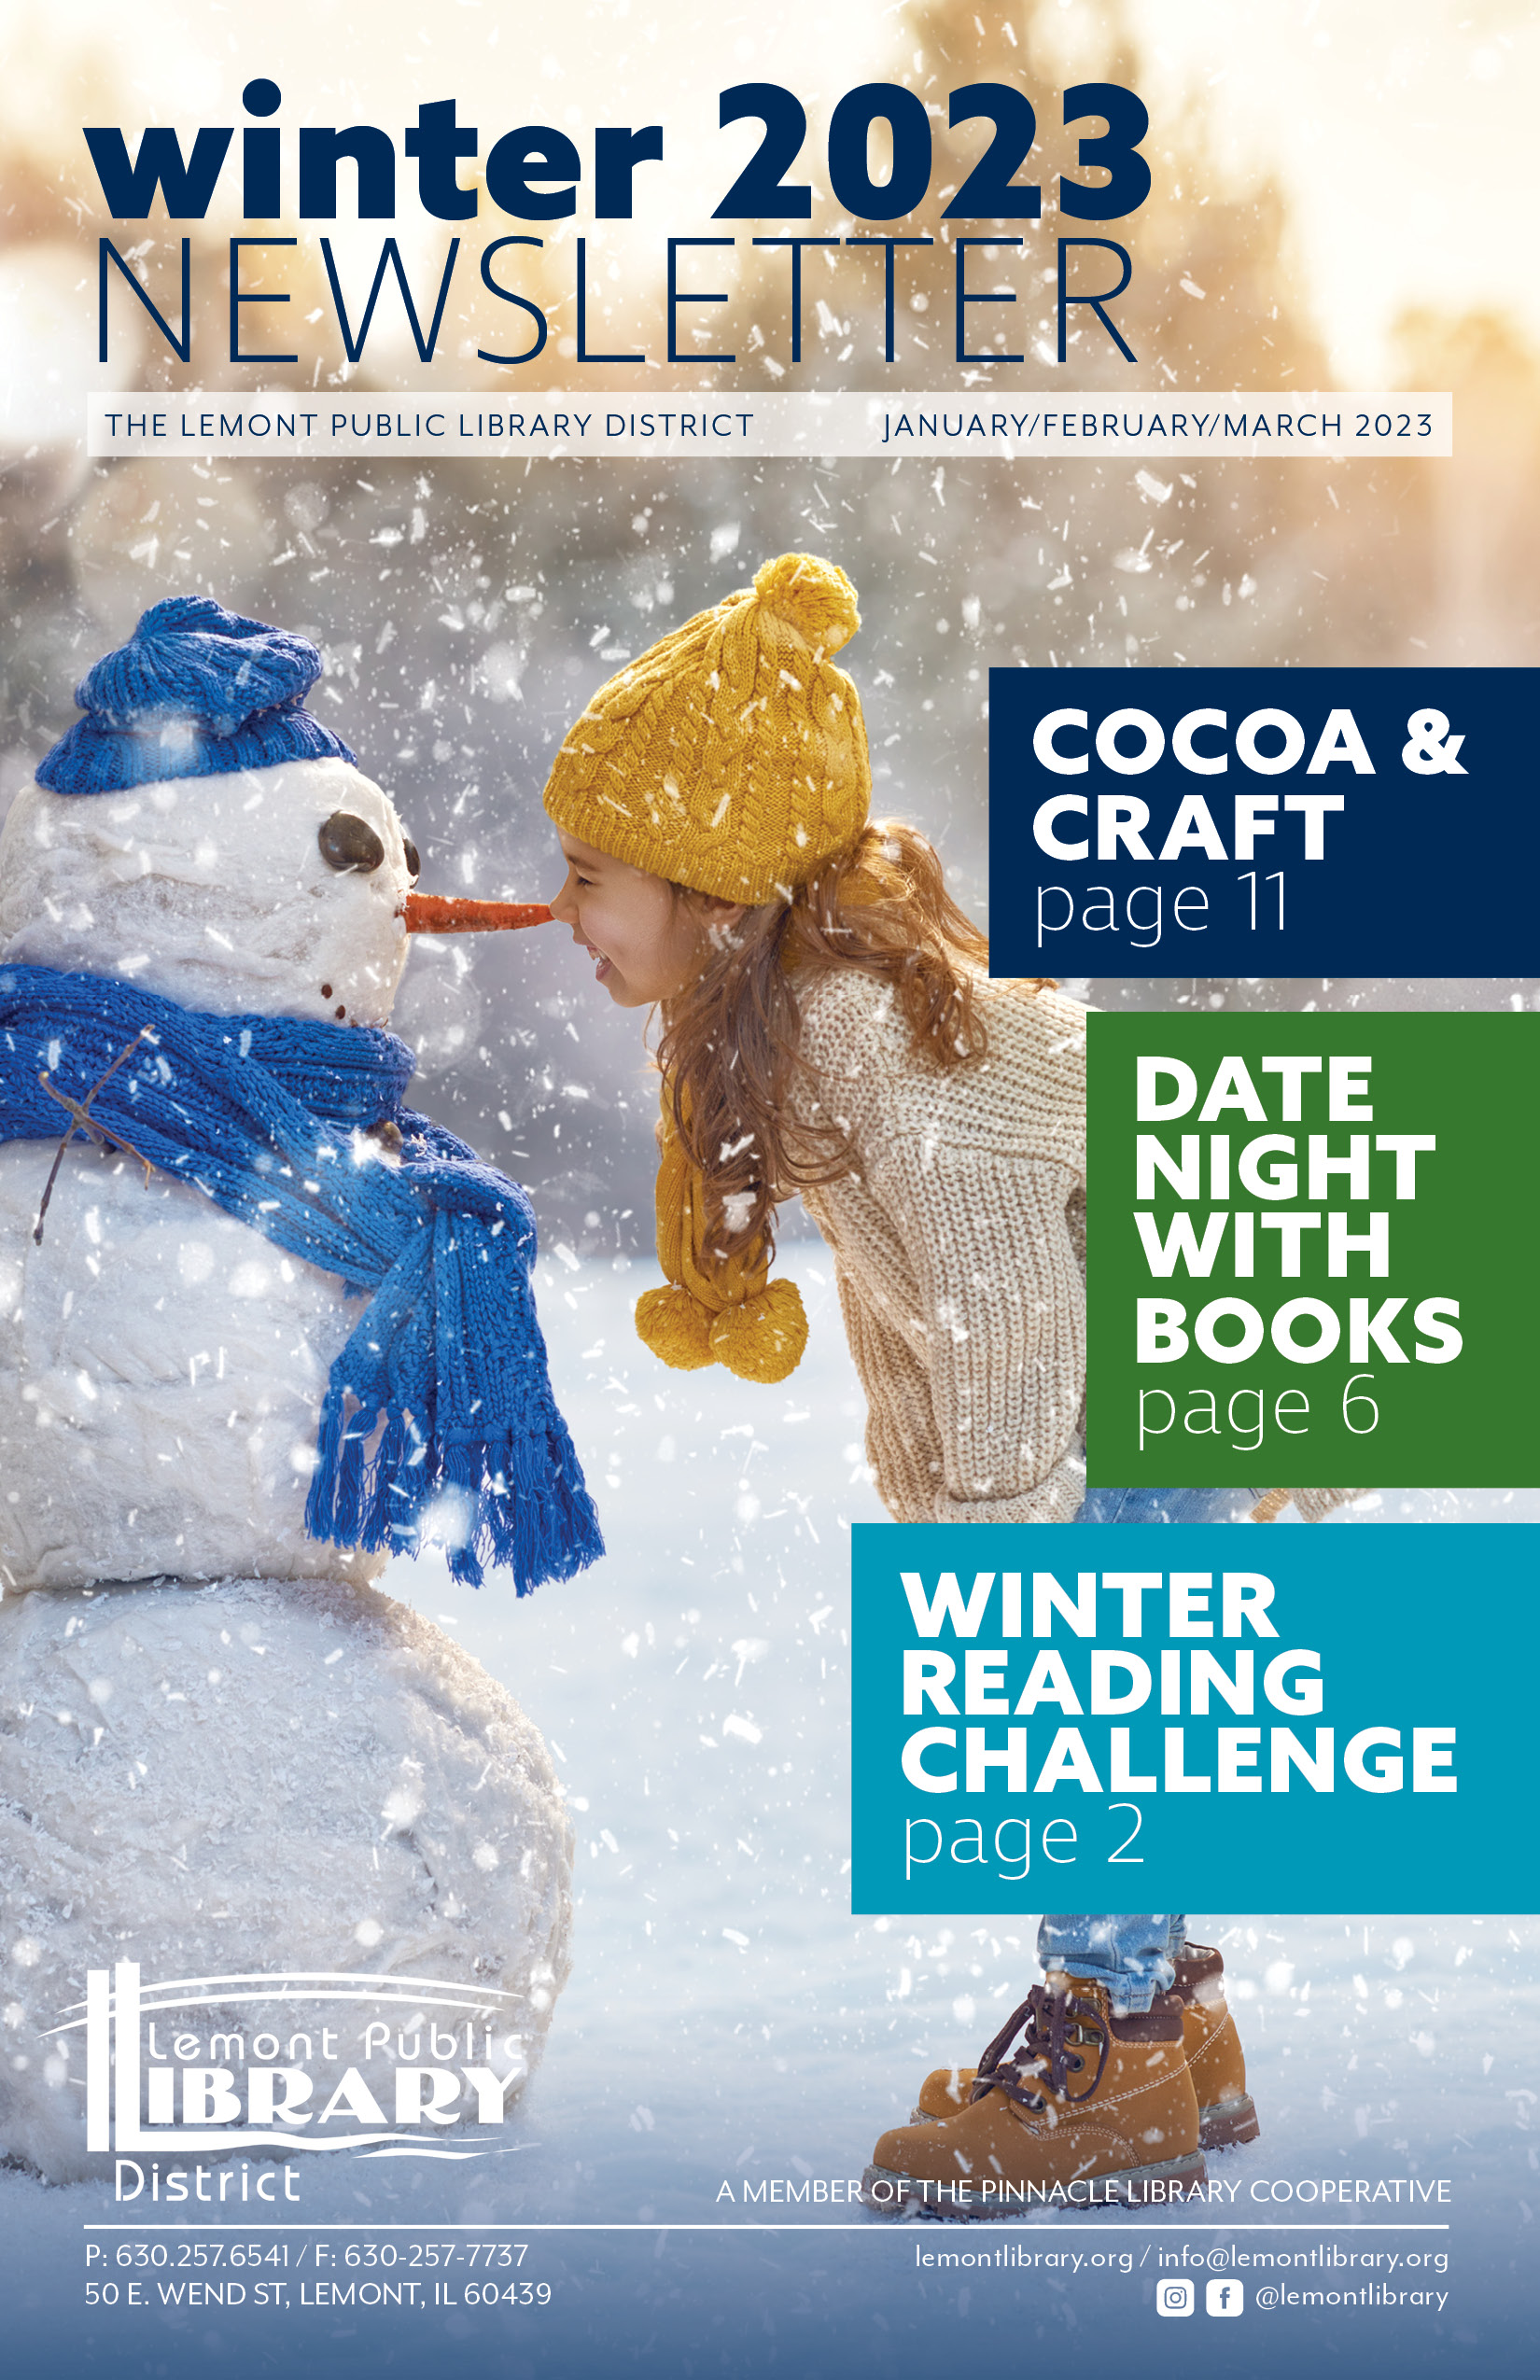 2023 Winter Newsletter Cover Image Little Girl Snowman